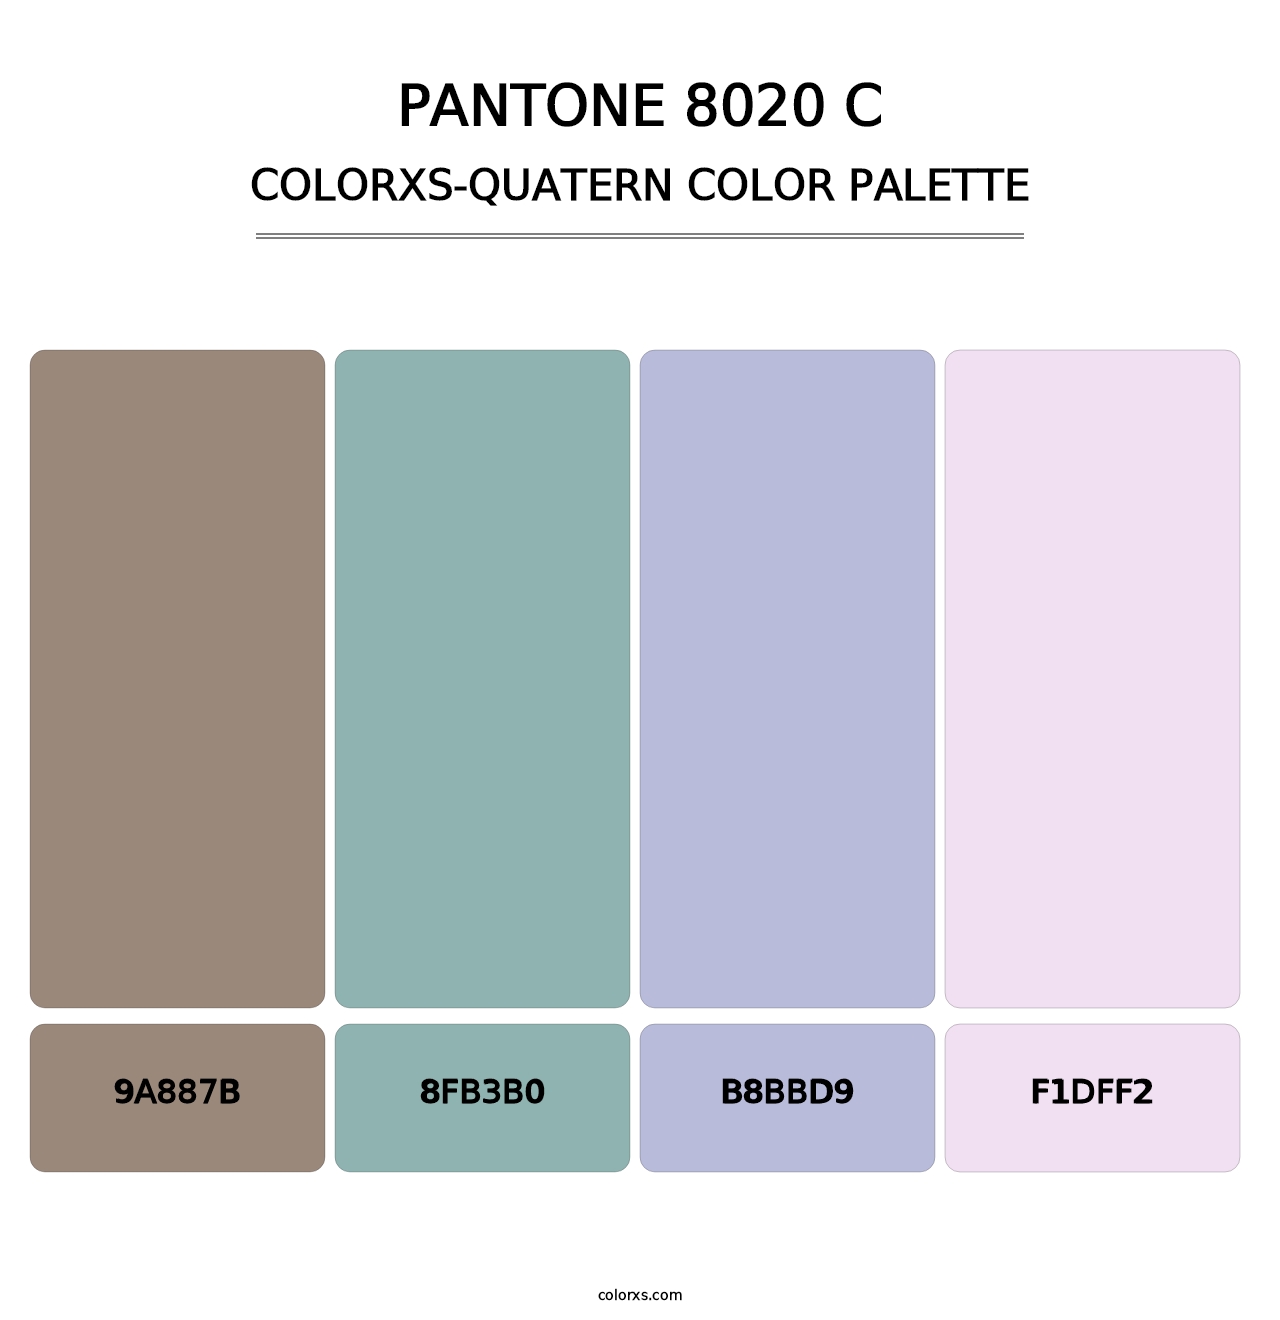 PANTONE 8020 C - Colorxs Quatern Palette